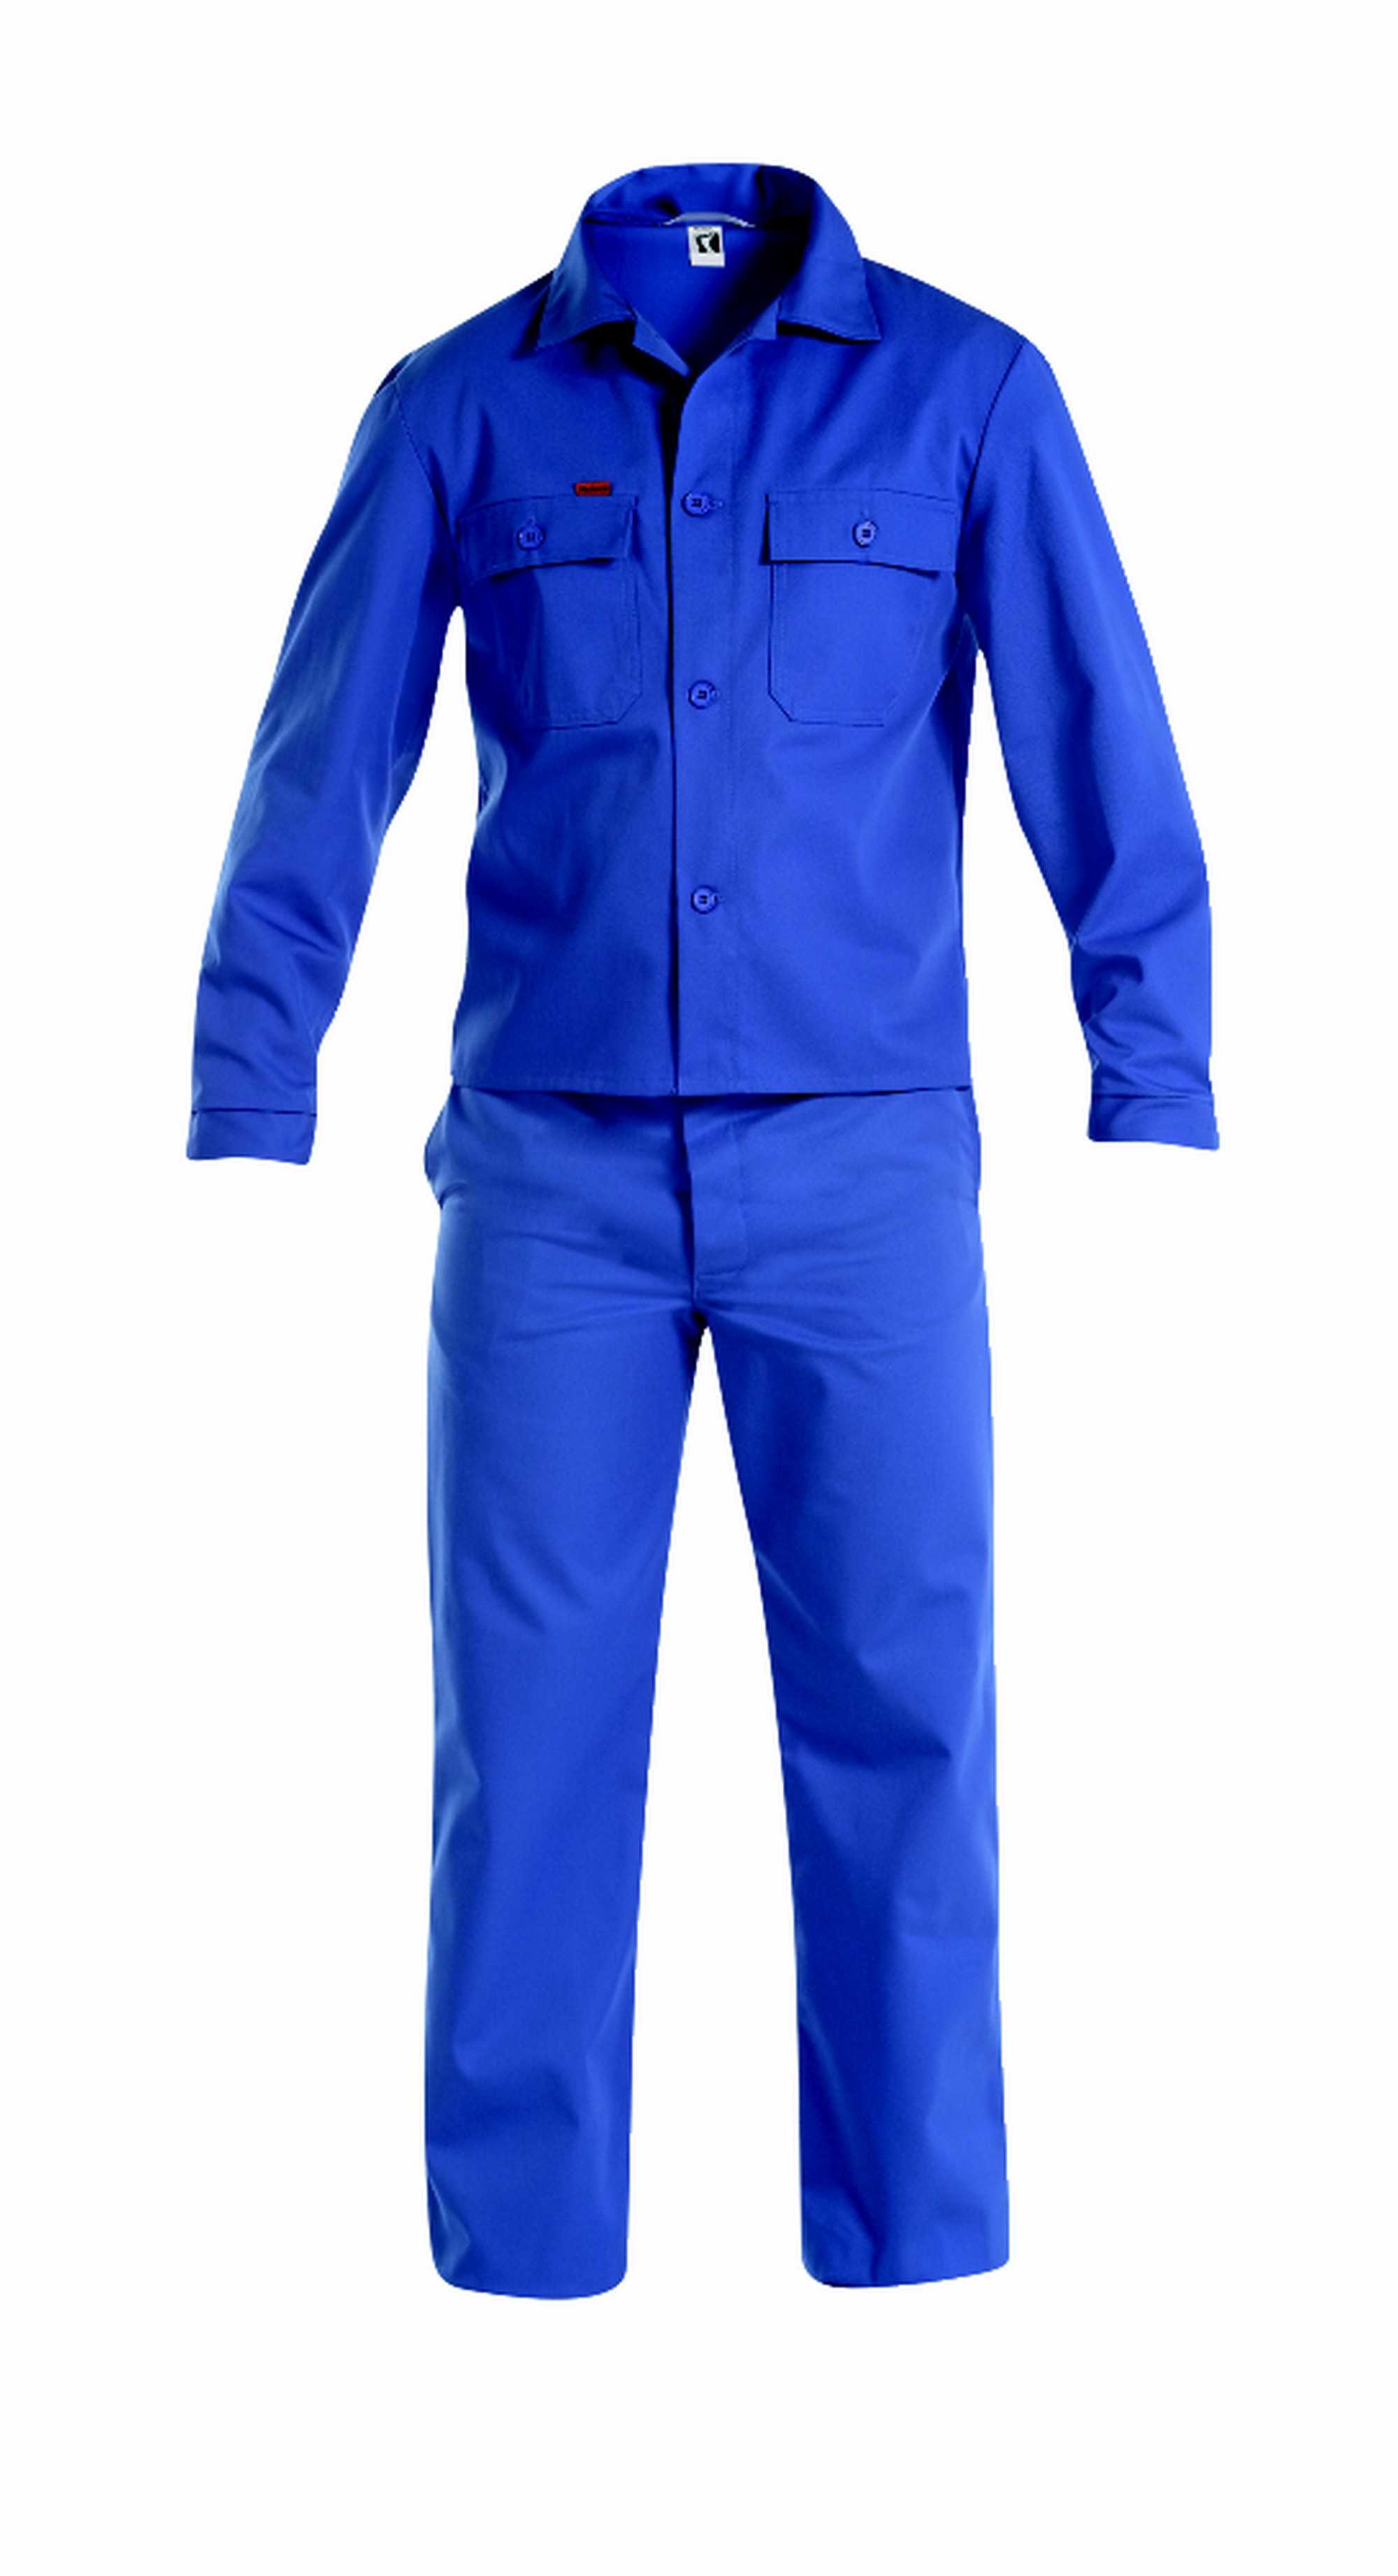 REINDL | Arbeitsanzug mit Bandzughose | Arbeitskleidung &  Arbeitsschutzartikel von Reindl